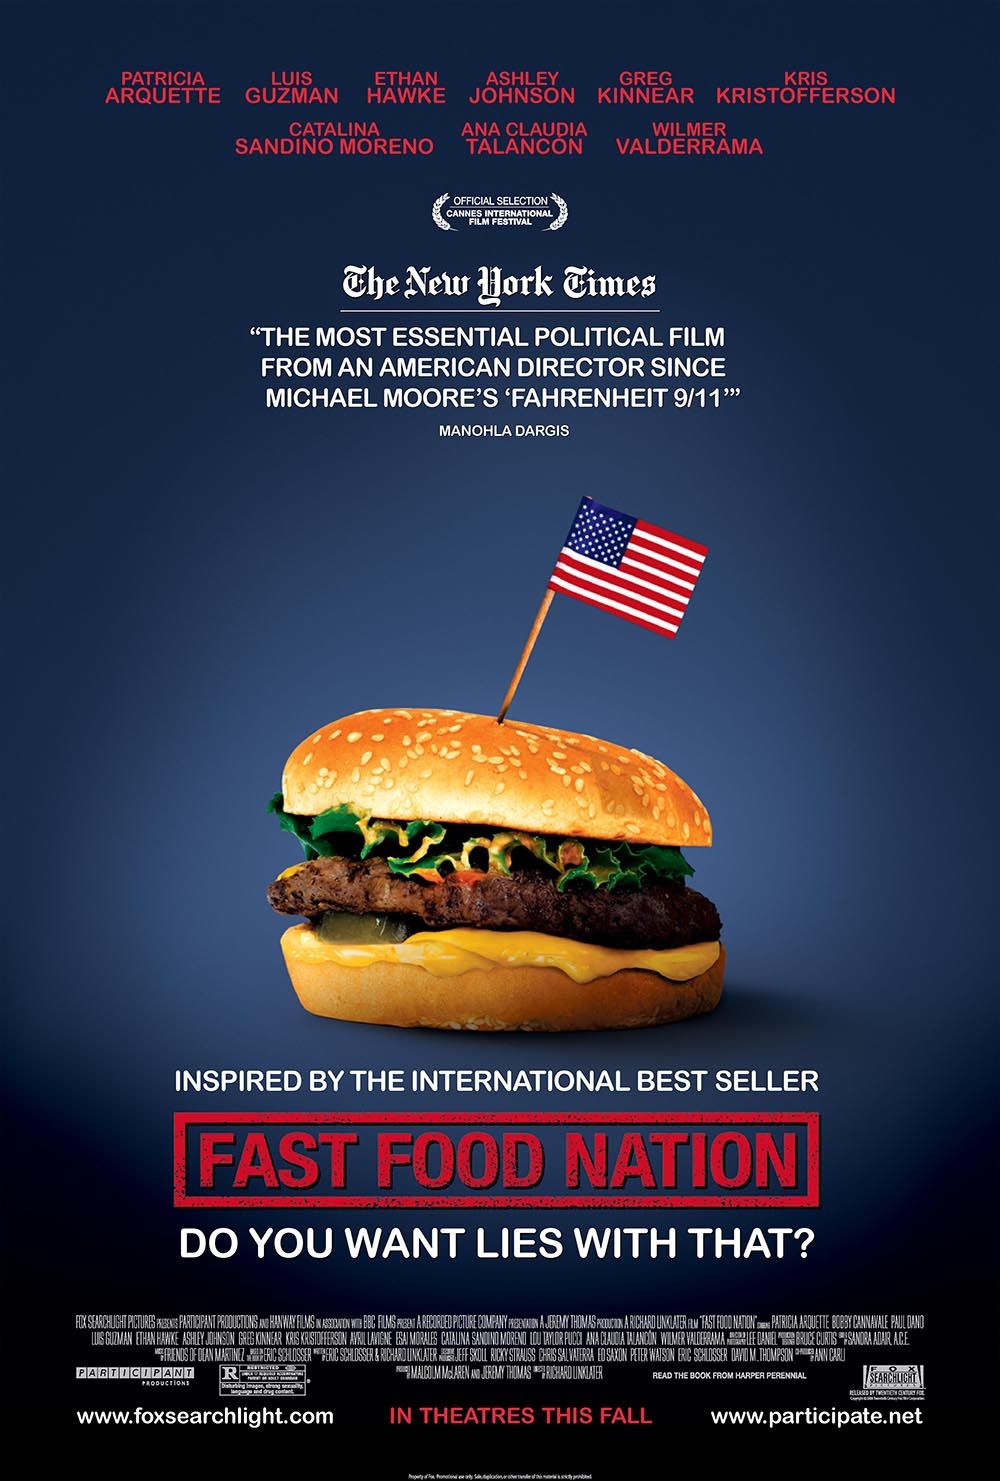 fast-food-nation-403fd4fd3cd9df0d17d60e65f2debeb5.jpg